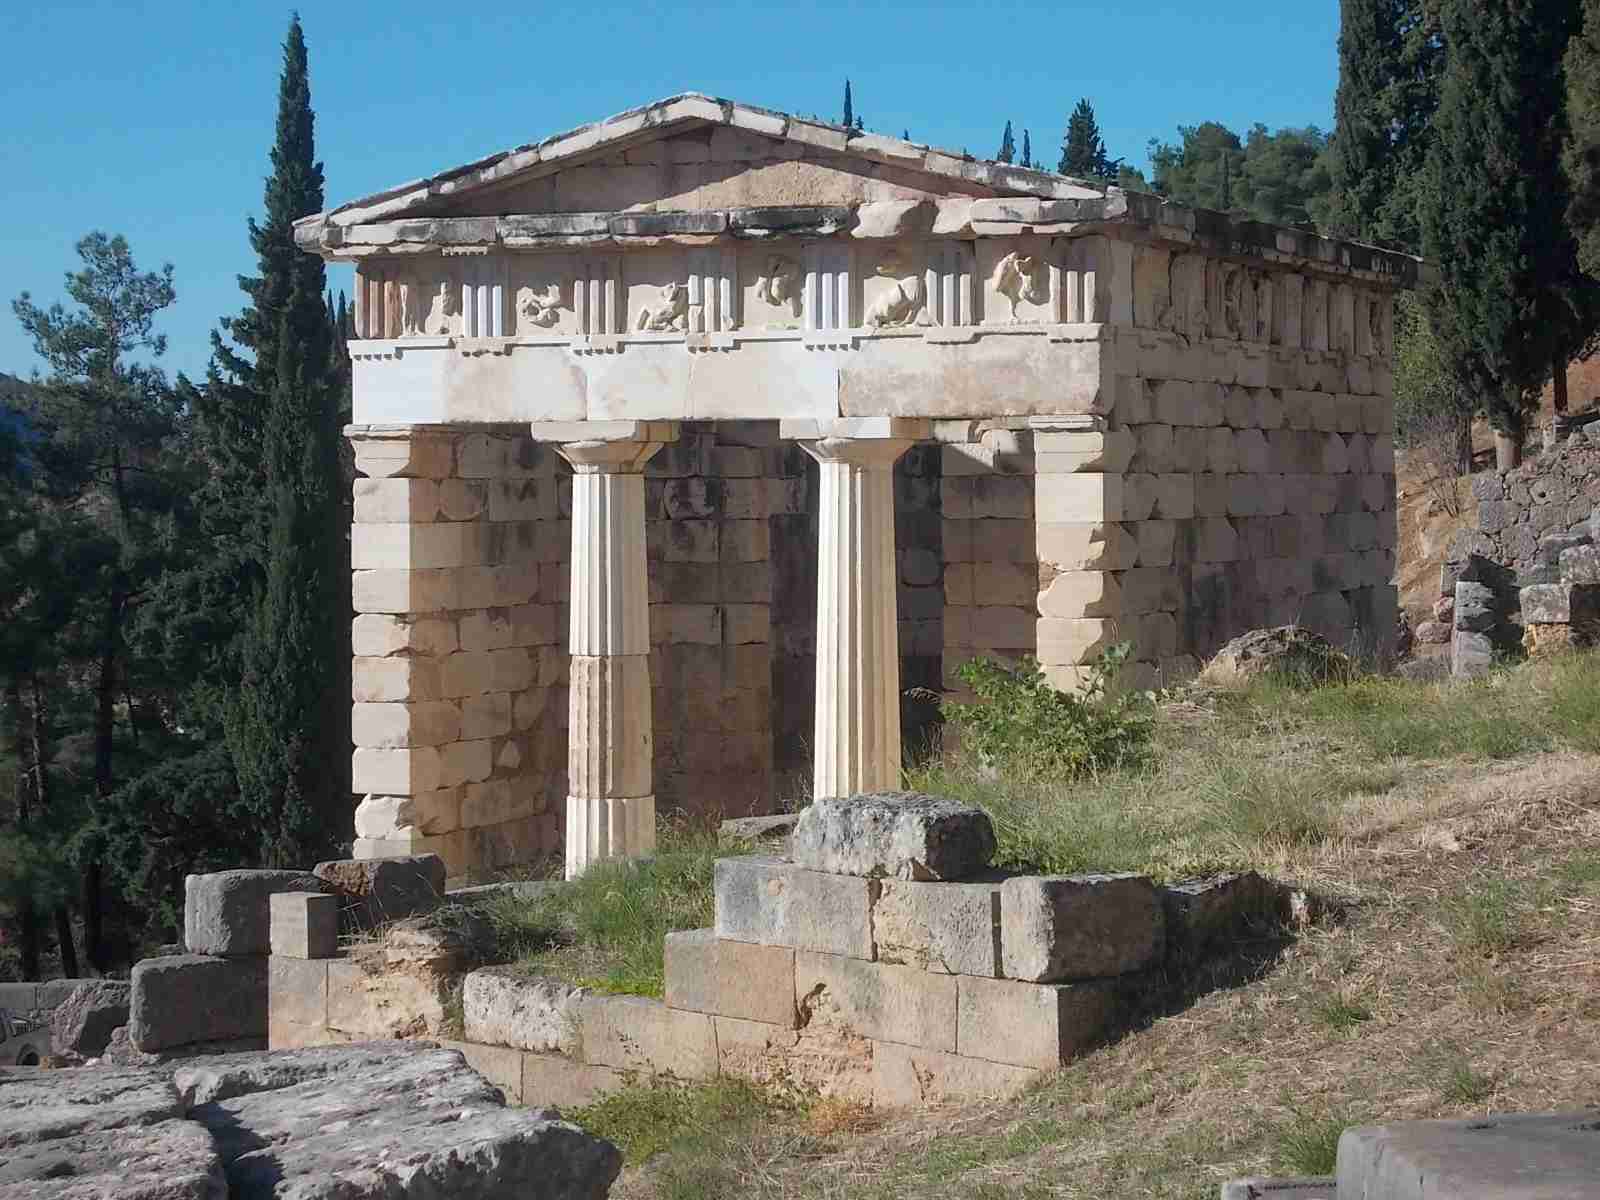 The Athenian Treasury at Delphi